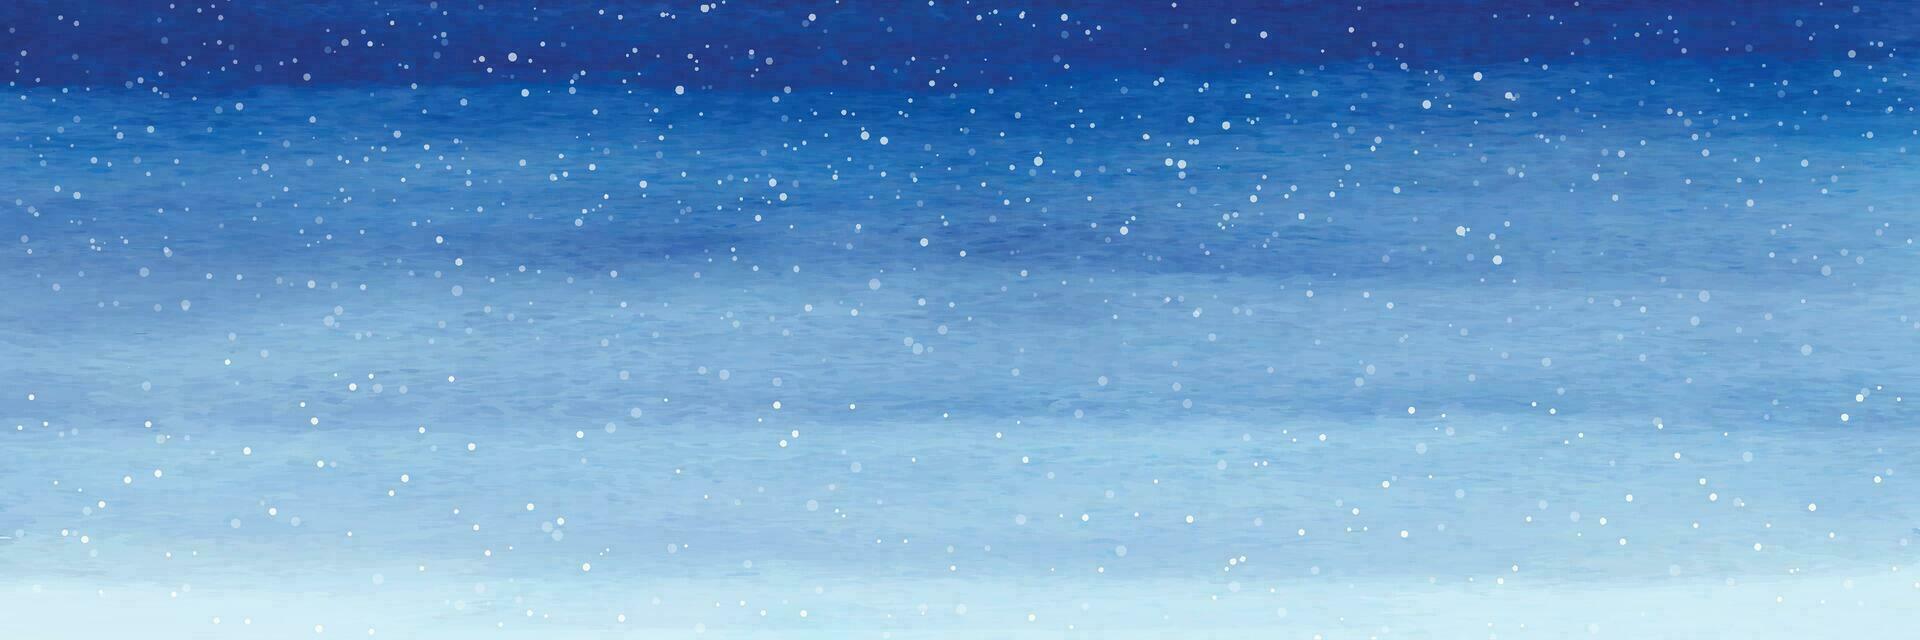 Natale sfondo con neve caduta creativo con blu acquerello vettore